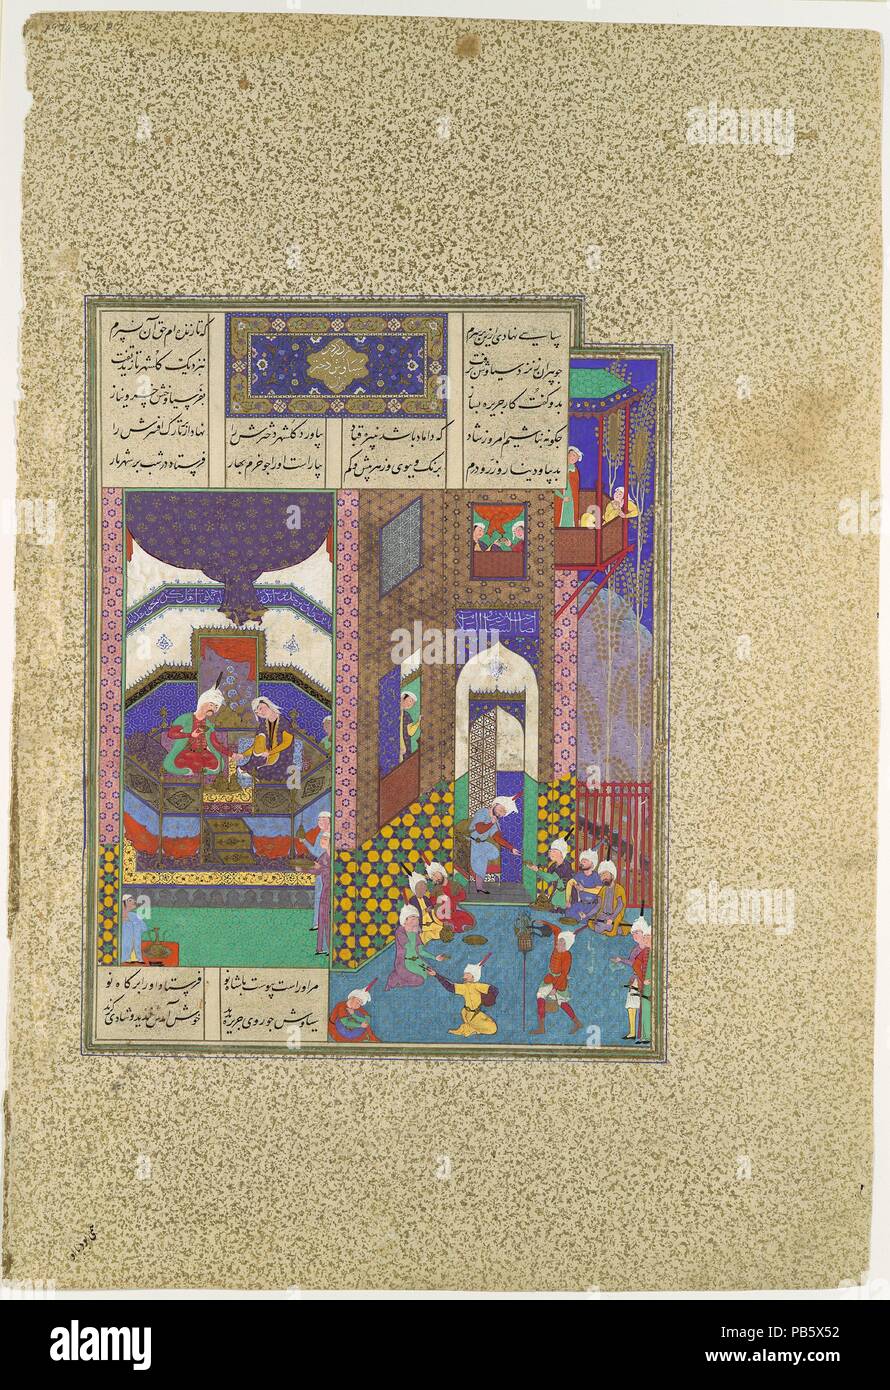 'Siyavush e Jarira sposa", folio 183v dal Shahnama (Libro dei Re) di Abu'l Qasim Firdausi, commissionato da Shah Tahmasp. Artista: dipinto attribuito a 'Abd al-Vahhab. Autore: Abu'l Qasim Firdausi (935-1020). Dimensioni: Pittura: H. 11 1/8 x W. 8 9/16 in. (H. 28.3 x W. 21.7 cm) intera pagina: H. 18 5/8 x W. 12 5/8 in. (H. 47,3 x W. 32.1 cm). Direttore del workshop: Mir Musavvir (attivo 1525-60). Data: ca. 1525-30. Sostenendo che i suoi compatrioti aveva sdegnato Siyavush, pirano gli offre la sua figlia Jarira nel matrimonio. Elegantemente vestito e profumato, ella è presentato al giovane principe, che w Foto Stock